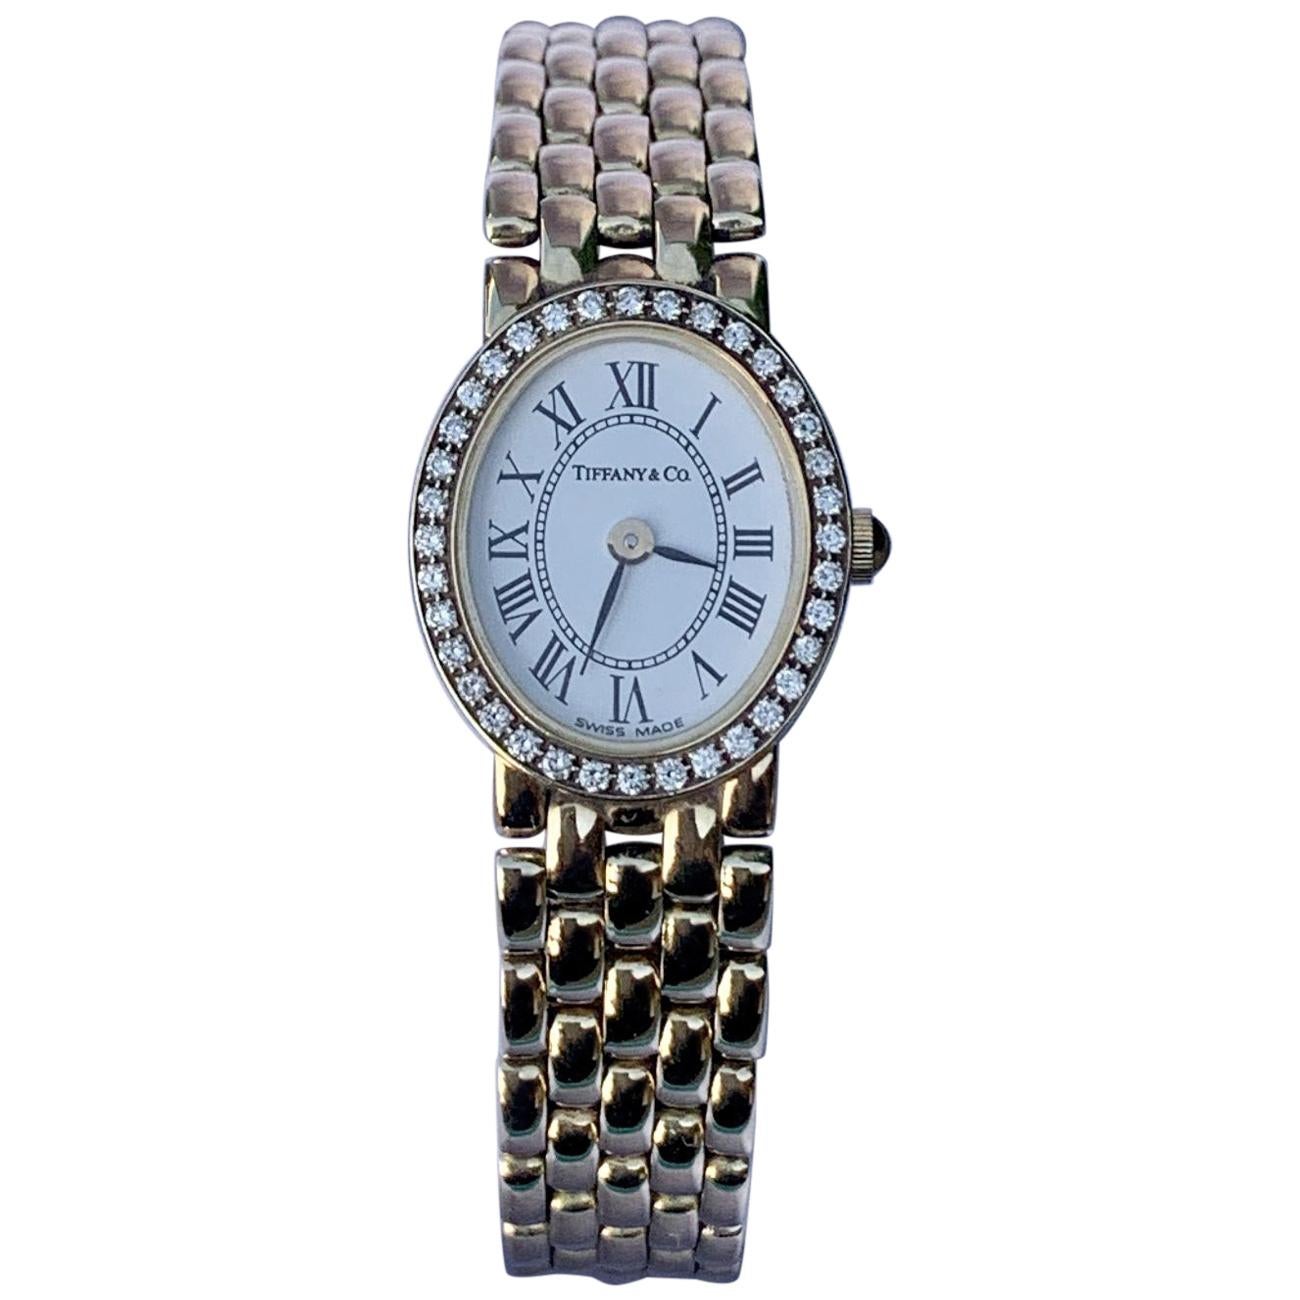 Tiffany & Co Ladies 14 Karat Yellow Gold Wristwatch with Diamond Bezel